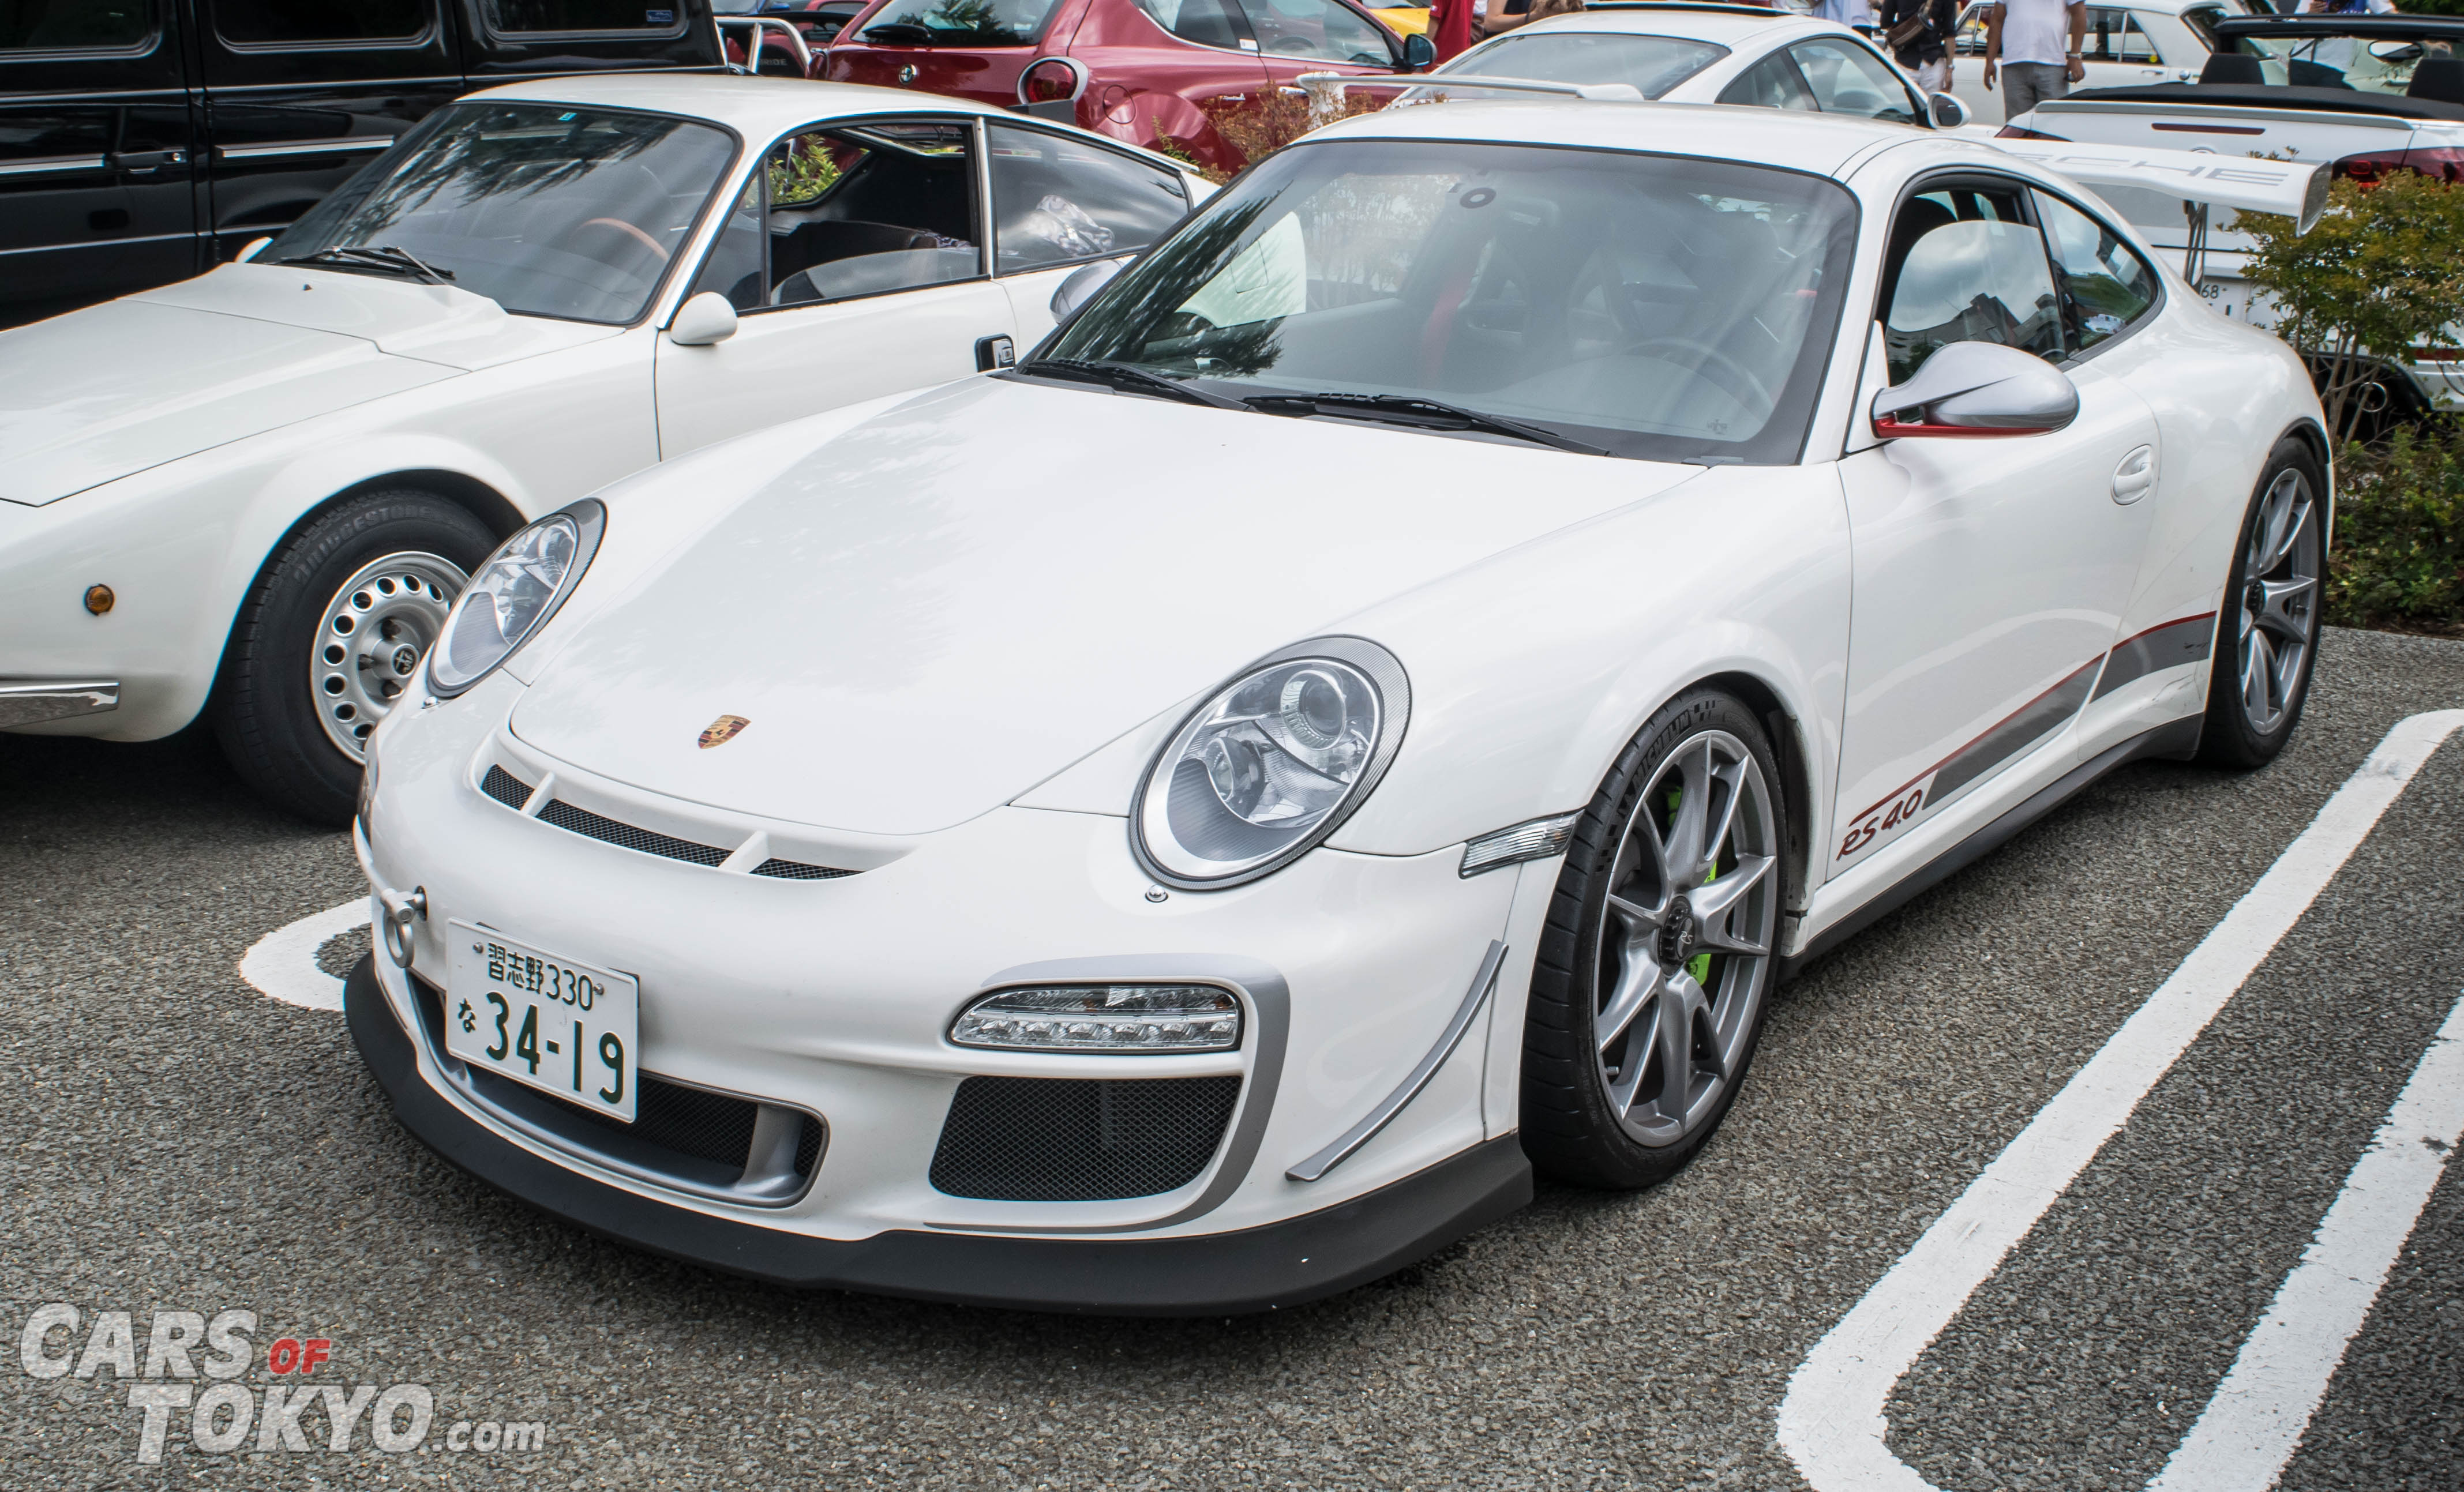 Cars of Tokyo Porsche 911 GT3 RS 4.0